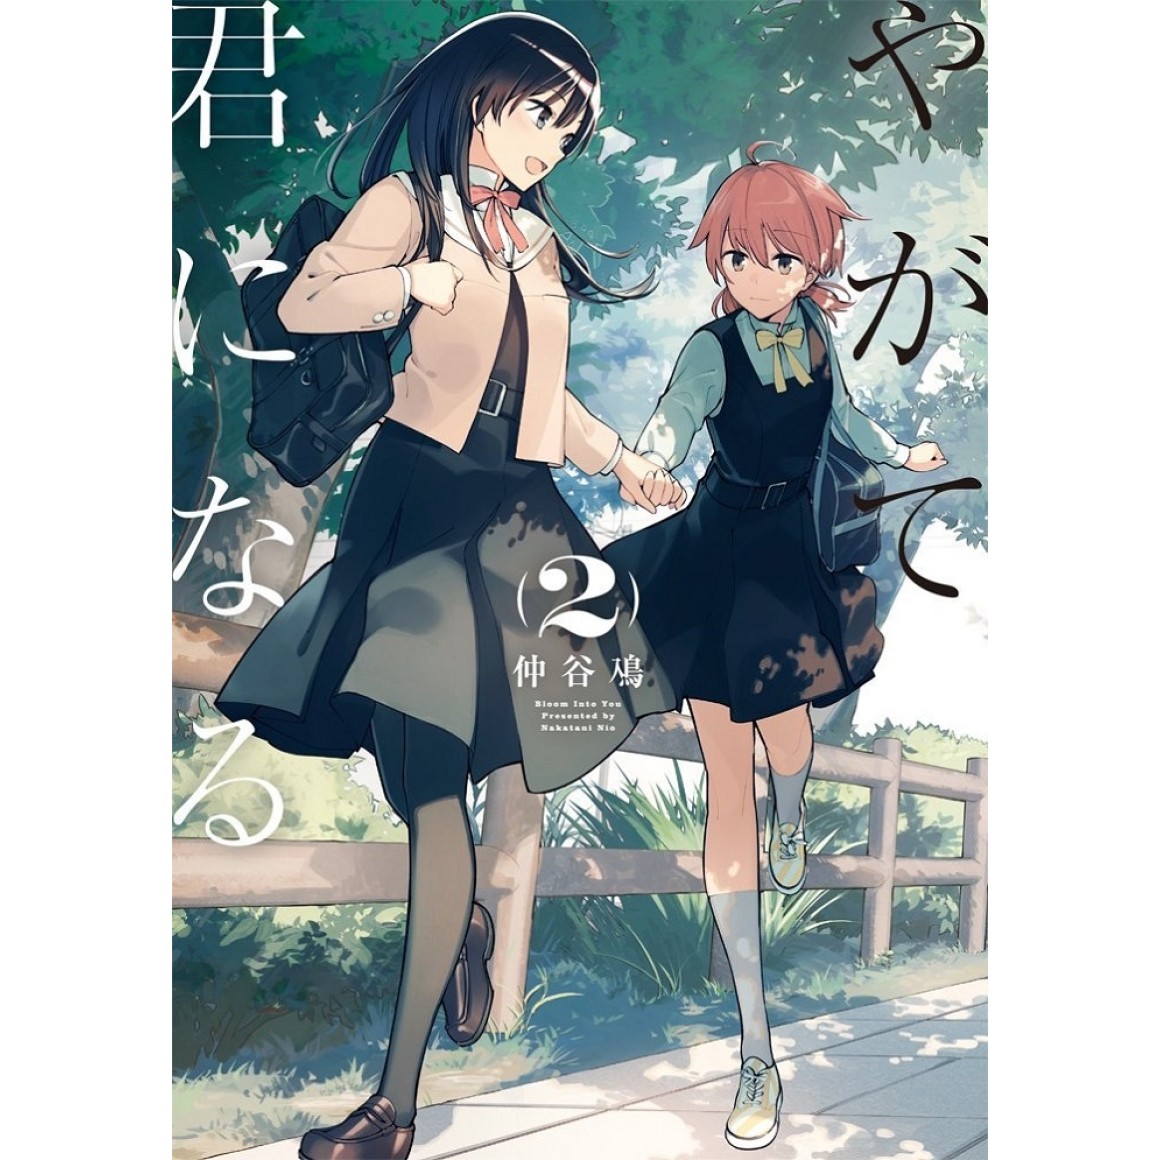 Autora de Yagate Kimi ni Naru anuncia novo mangá de ficção científica -  IntoxiAnime